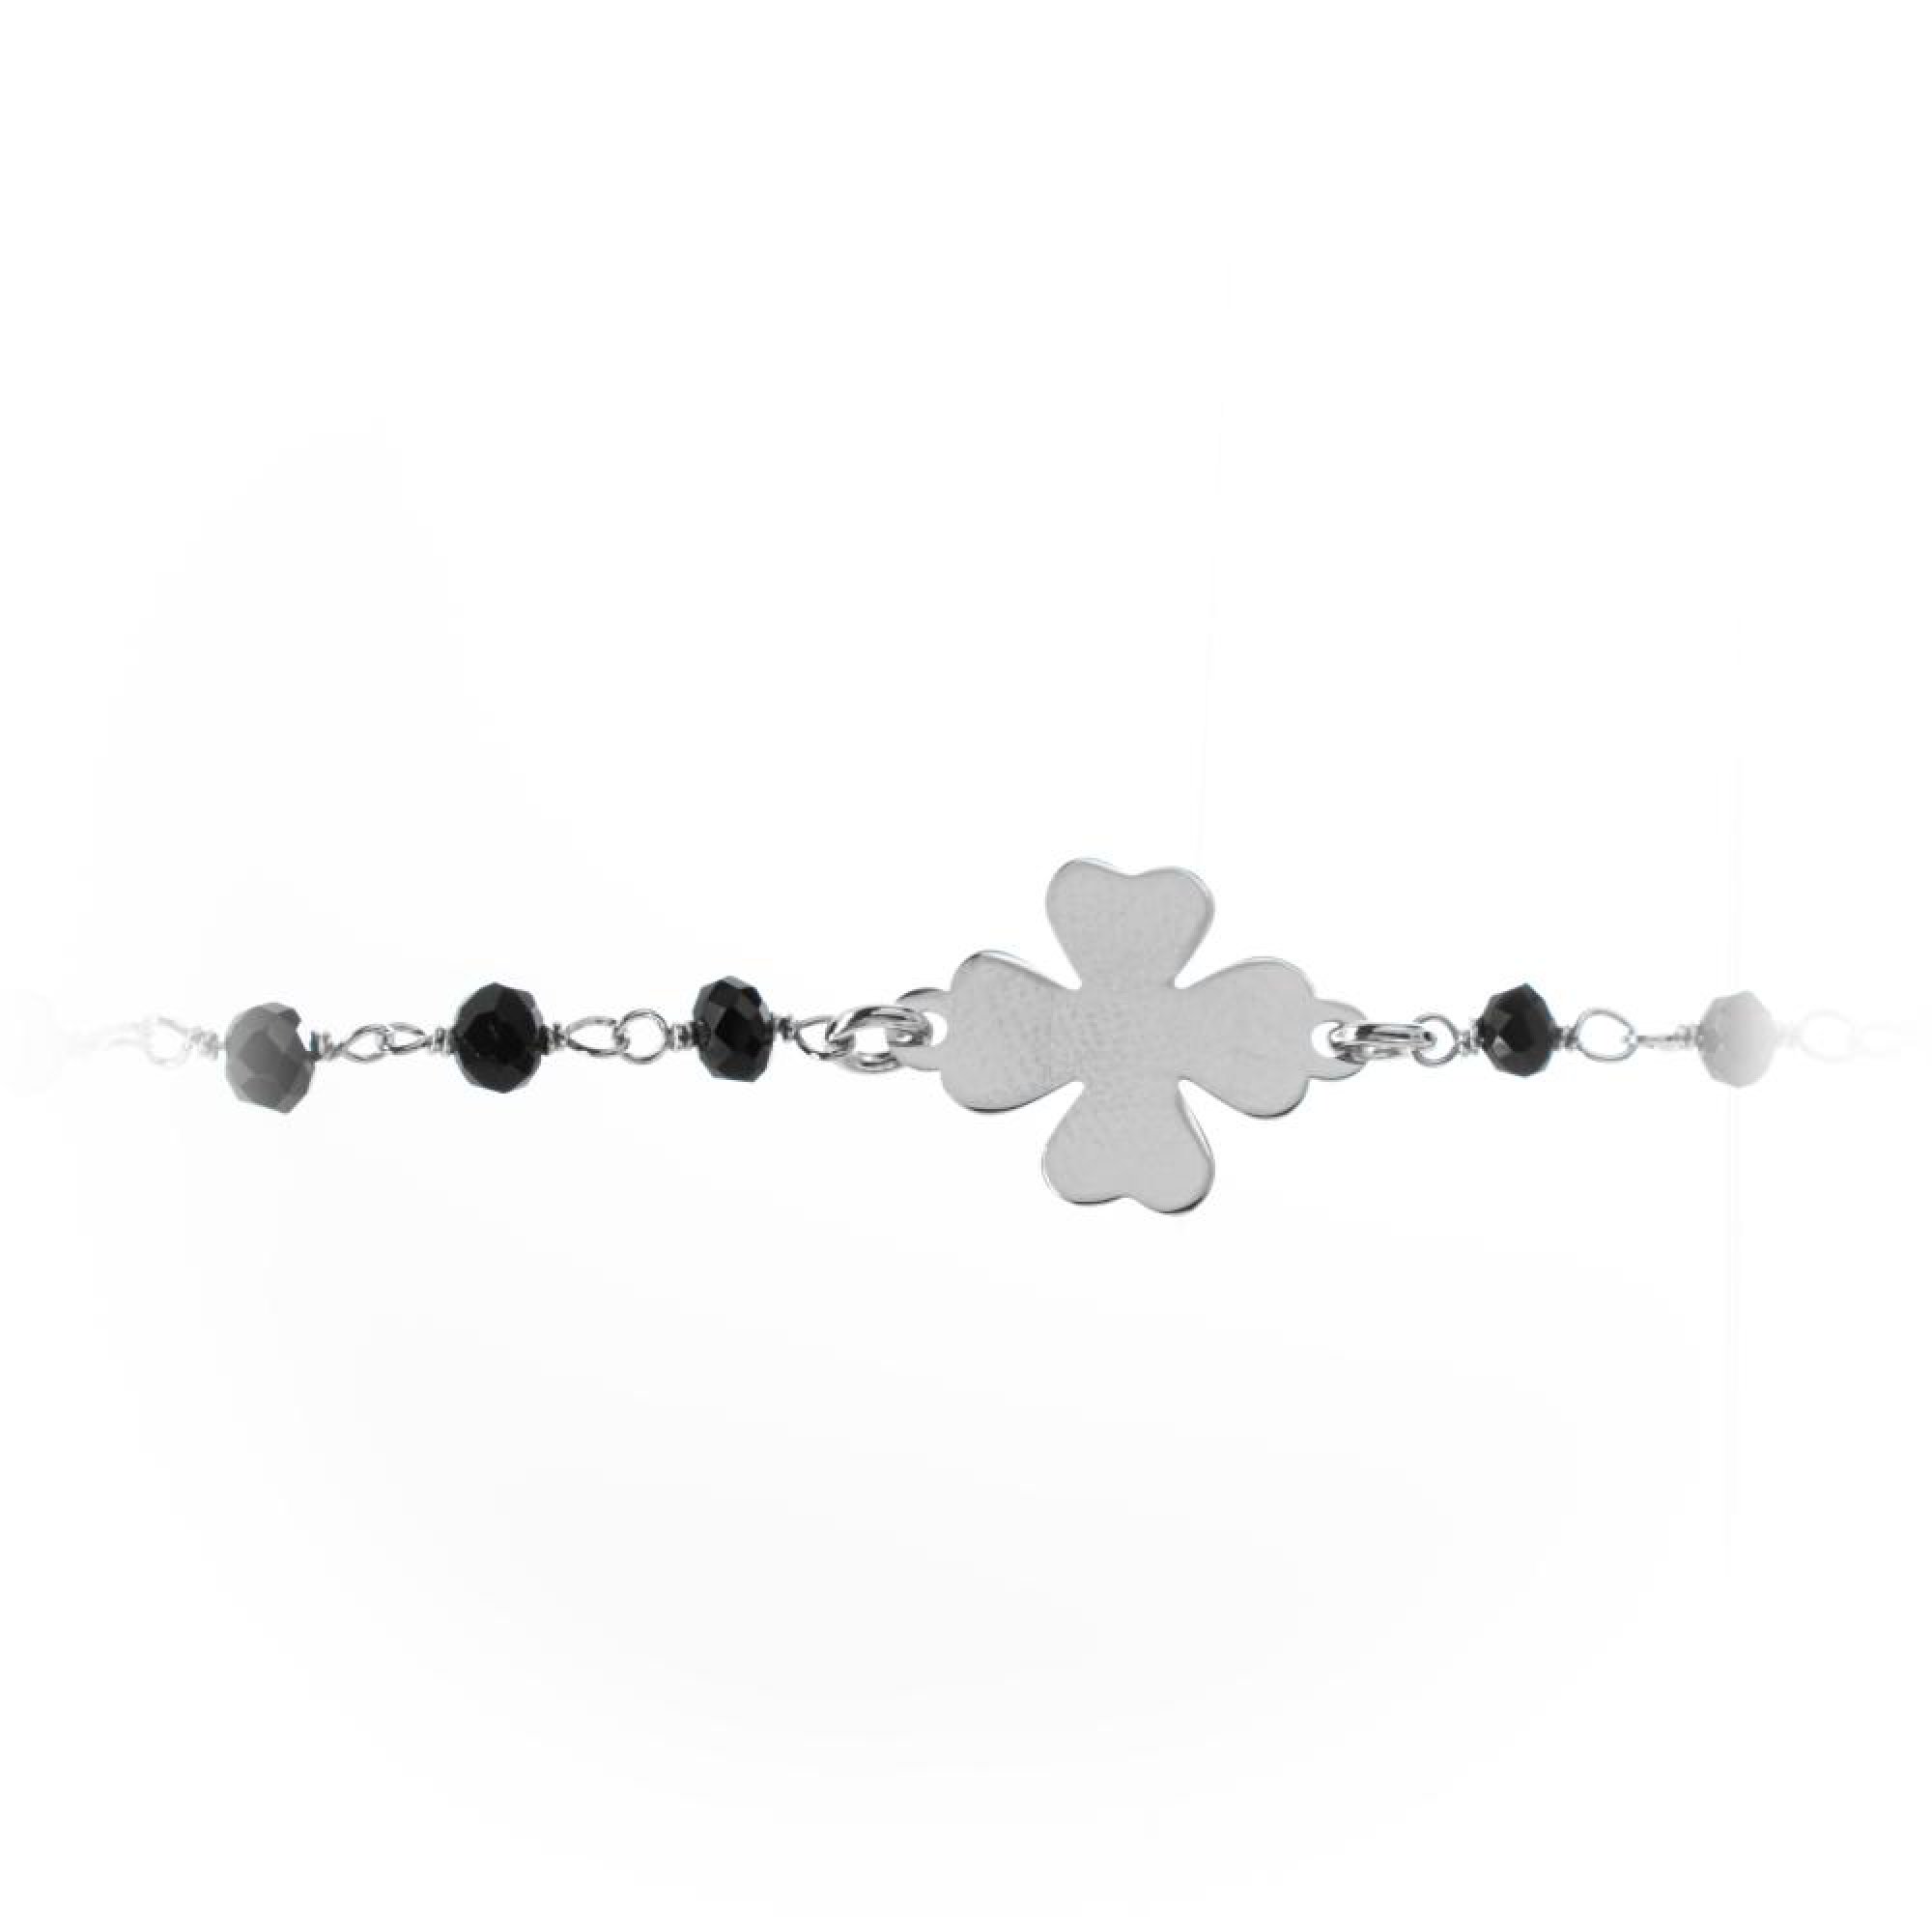 Four leaf clover bracelet with black stones